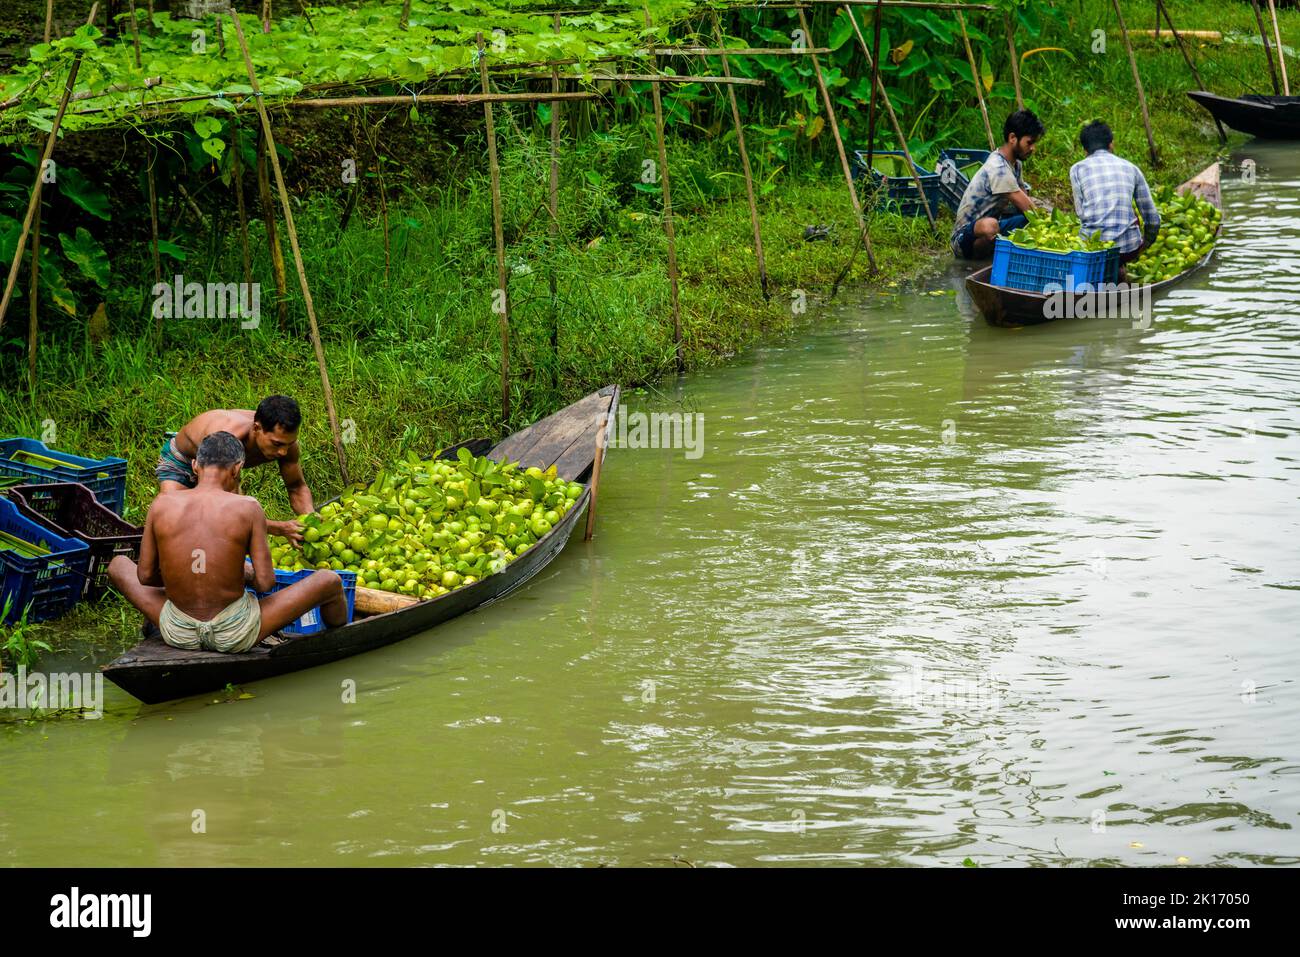 Barishal, Bangladesch. 16.. September 2022. Zu den faszinierendsten Dingen in der südlichen Region von Bangladesch gehört der wunderschöne schwimmende Guava-Markt von Swarupkathi in Pirojpur in der Barishal Division. Die Guava war ein kulinarischer Hit in der Gegend und ihr Ruhm verbreitete sich allmählich im ganzen Land. Heute wird Guava in fünf Gewerkschaften von Swarupkathi auf 640 Hektar Land angebaut. Seit mehr als 100 Jahren erleben die lokalen Bauern das auf und ab des Lebens zusammen mit dem auf und ab des Flusses. Viele Bauern und Großhändler versammeln sich hier jeden Tag. Stockfoto